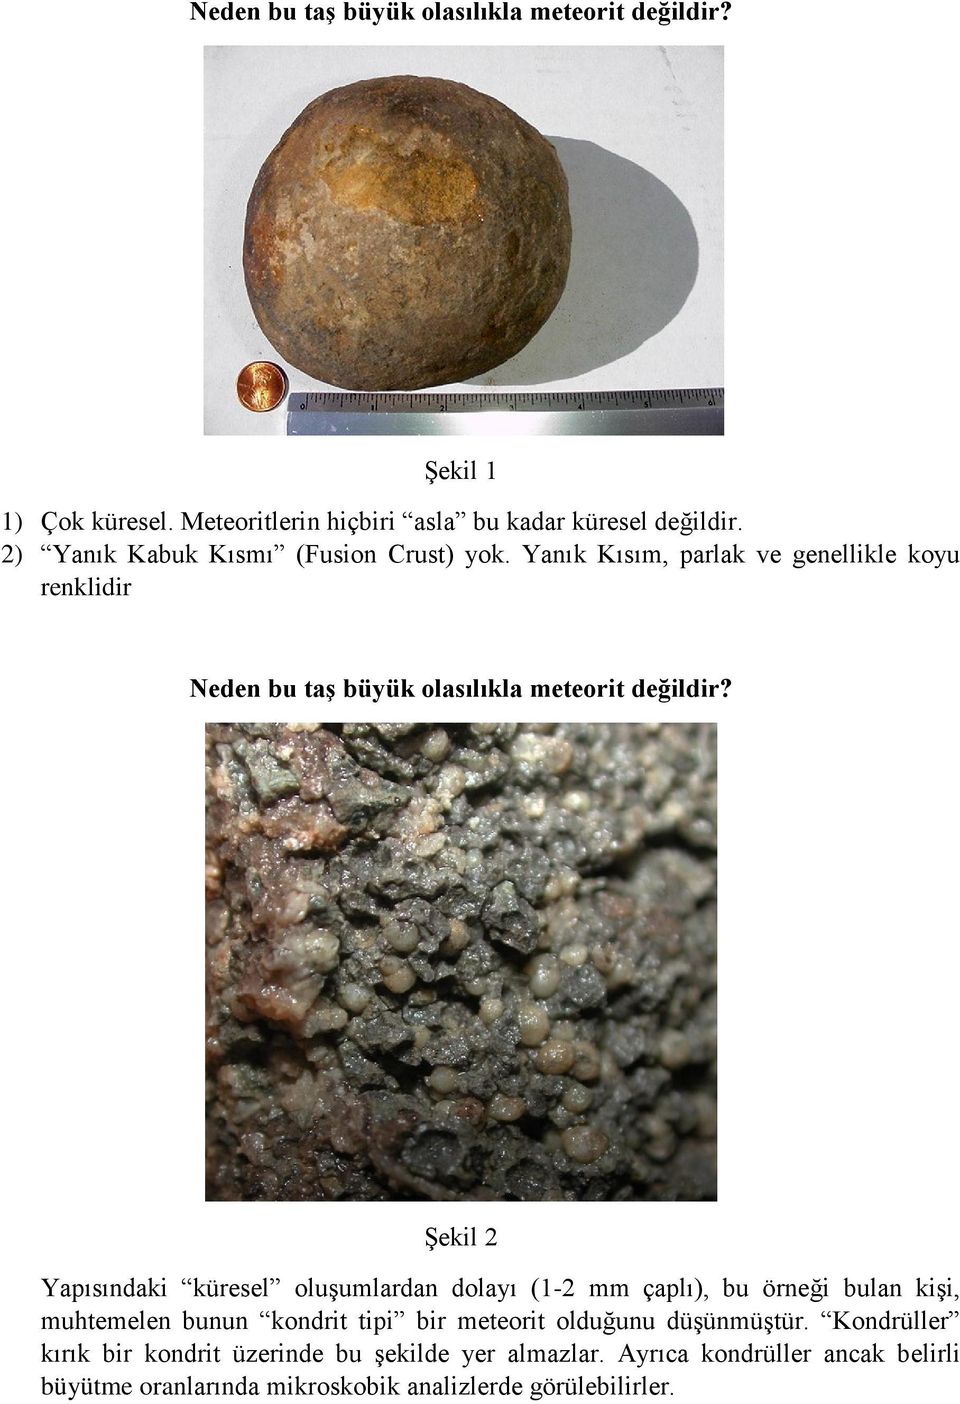 örneği bulan kişi, muhtemelen bunun kondrit tipi bir meteorit olduğunu düşünmüştür.